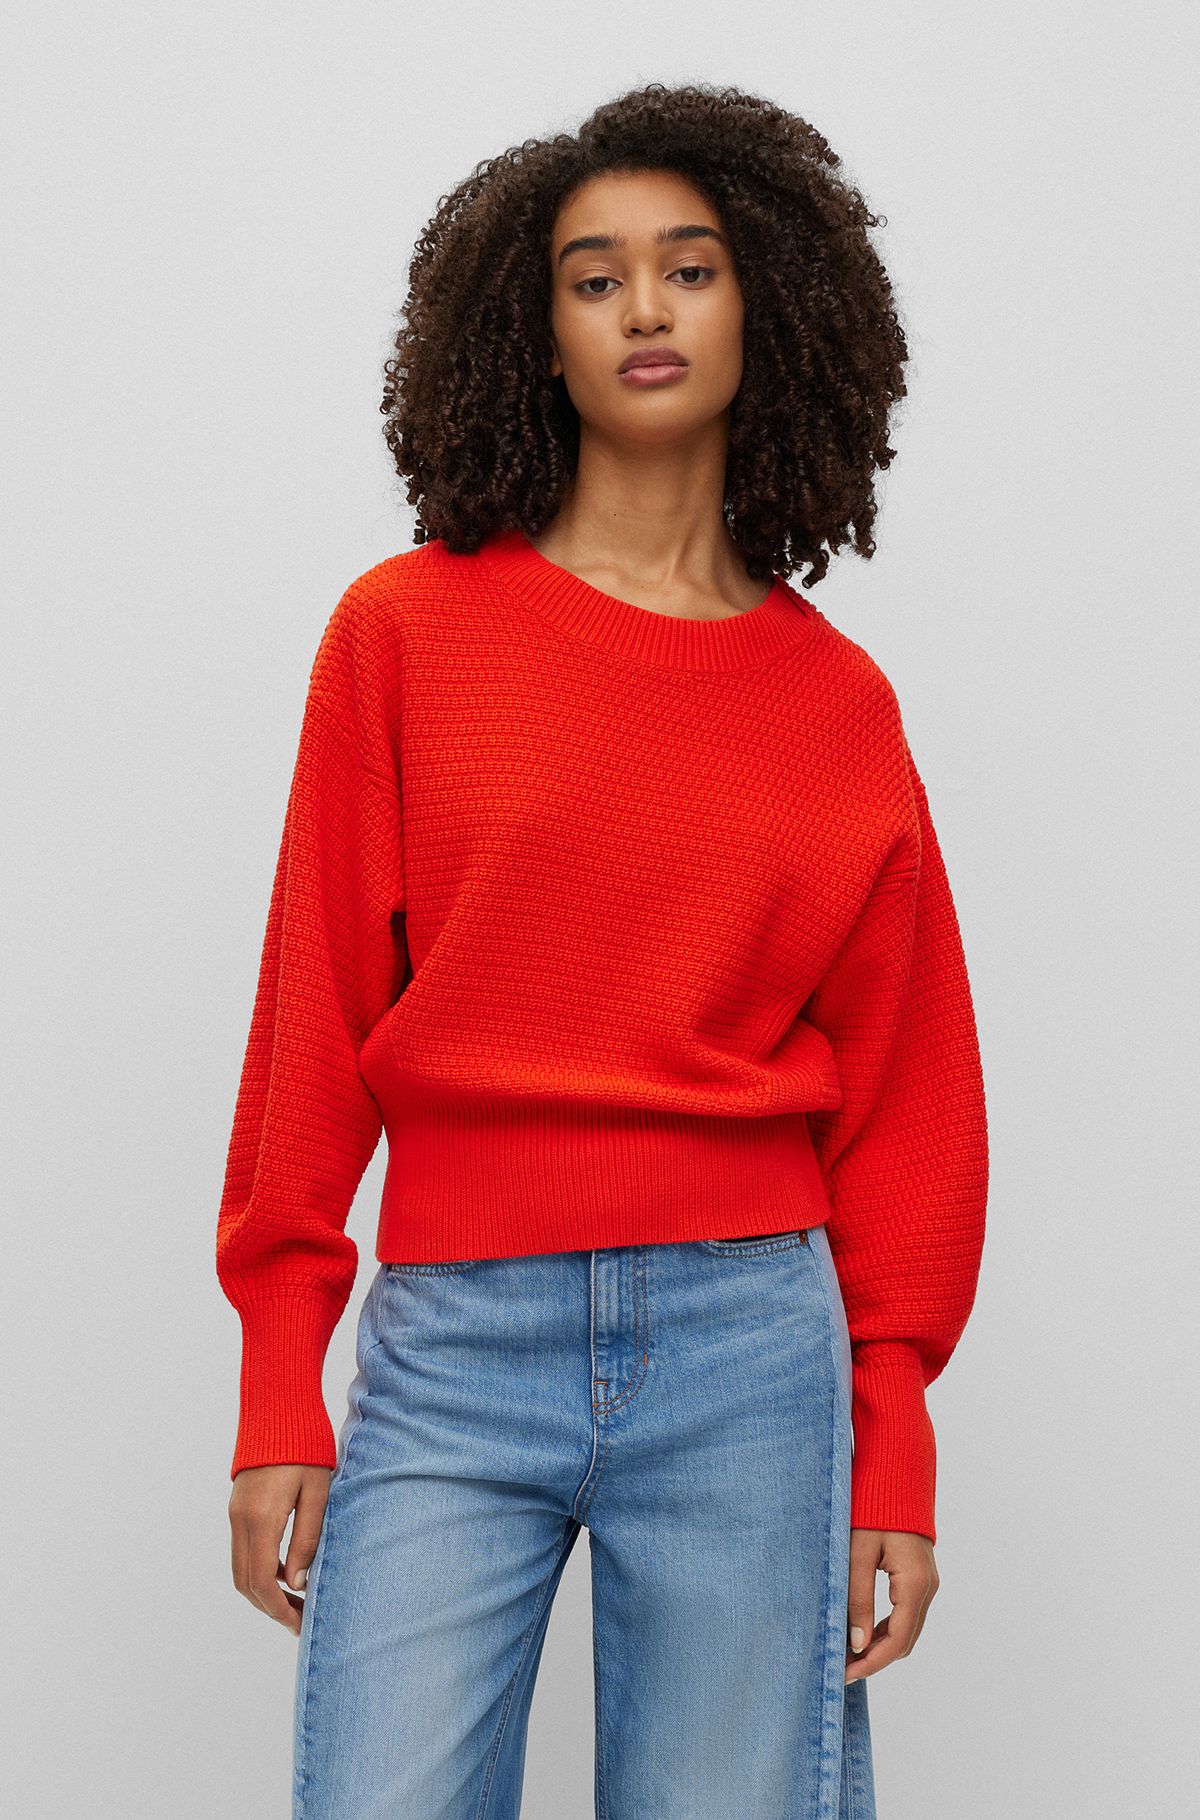 Orange Sweaters & Cardigans for Women by HUGO BOSS